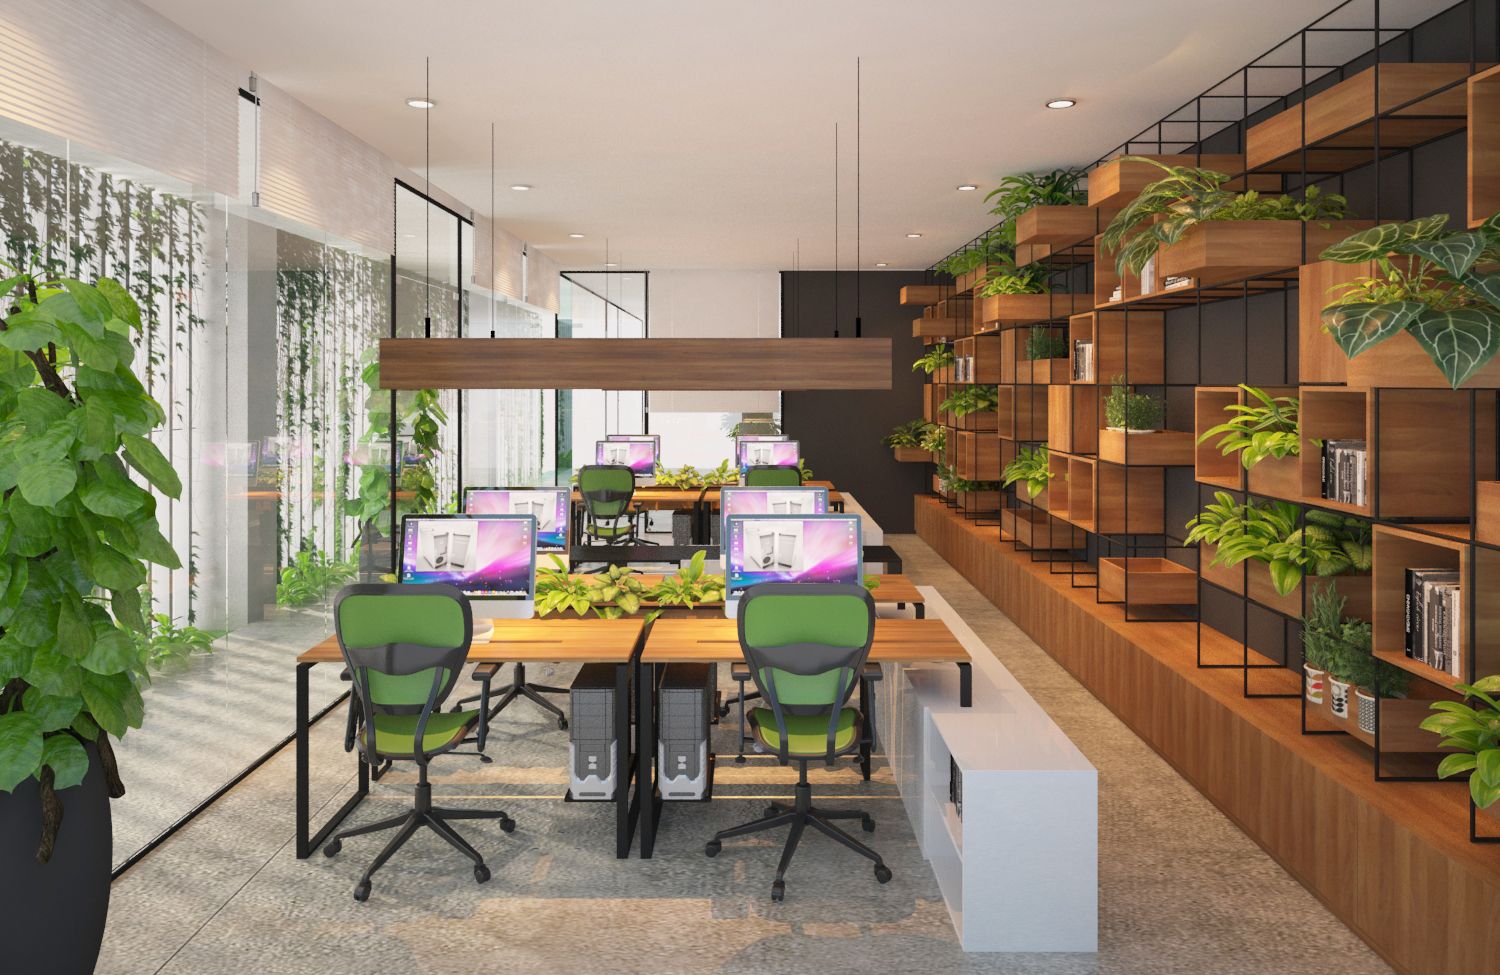 Không gian xanh nơi văn phòng góp phần tạo ấn tượng cho các đối tác, khách hàng